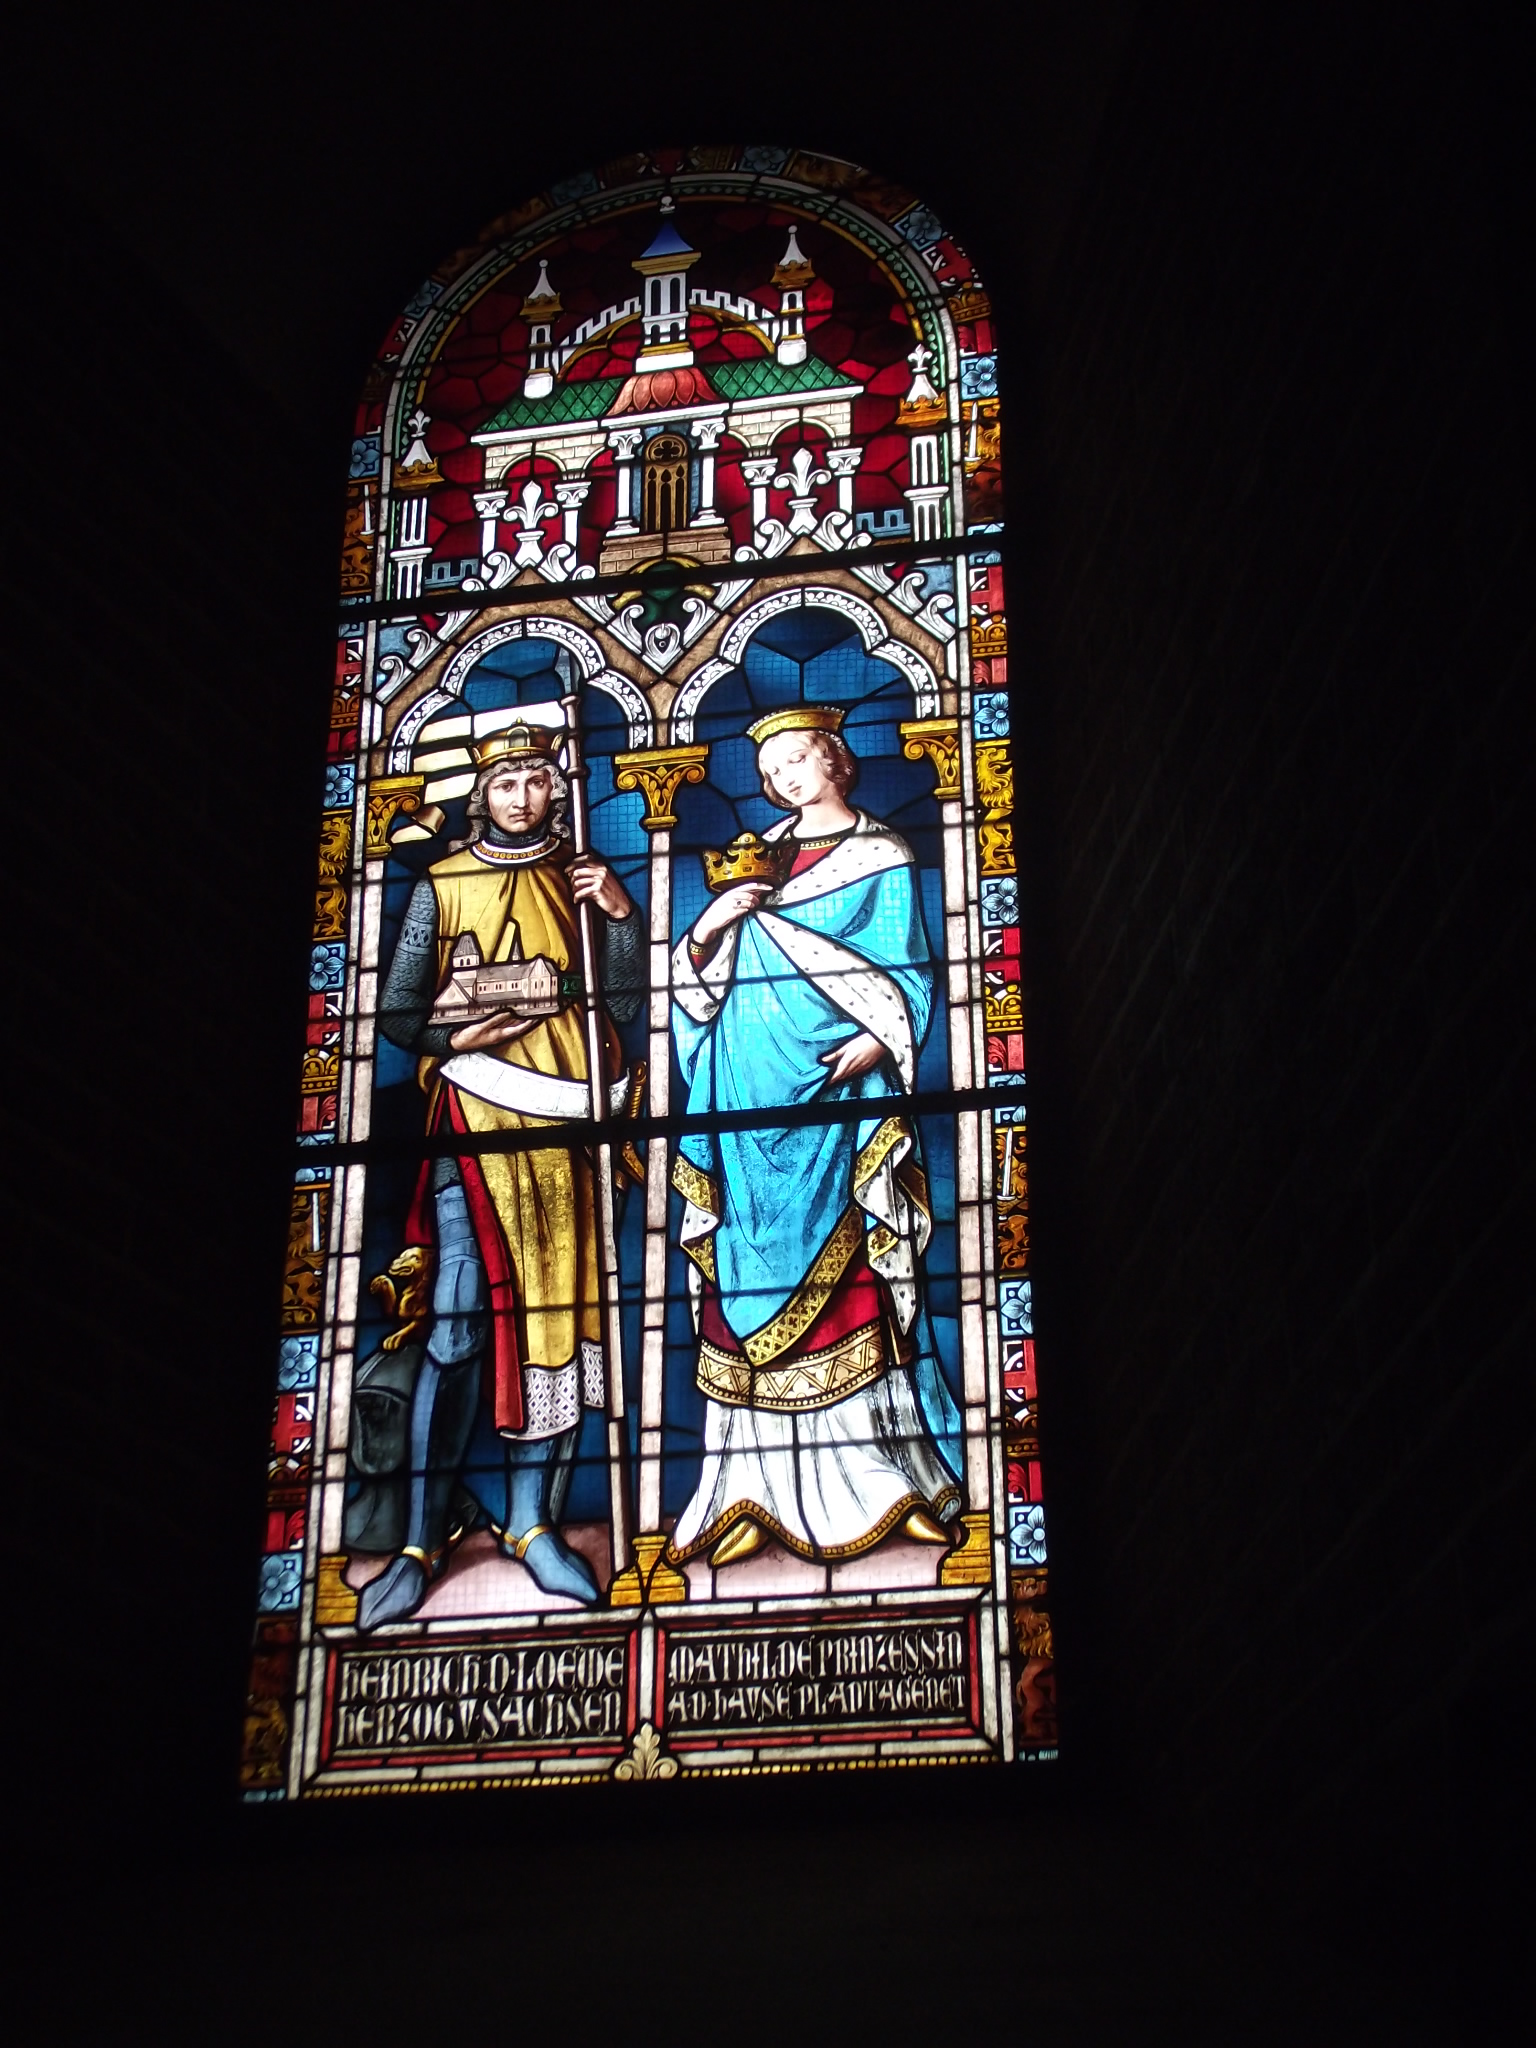 Fenster mit Heinrich der Löwe Herzog von Sachsen und Prinzessin Mathilde Plantagenet